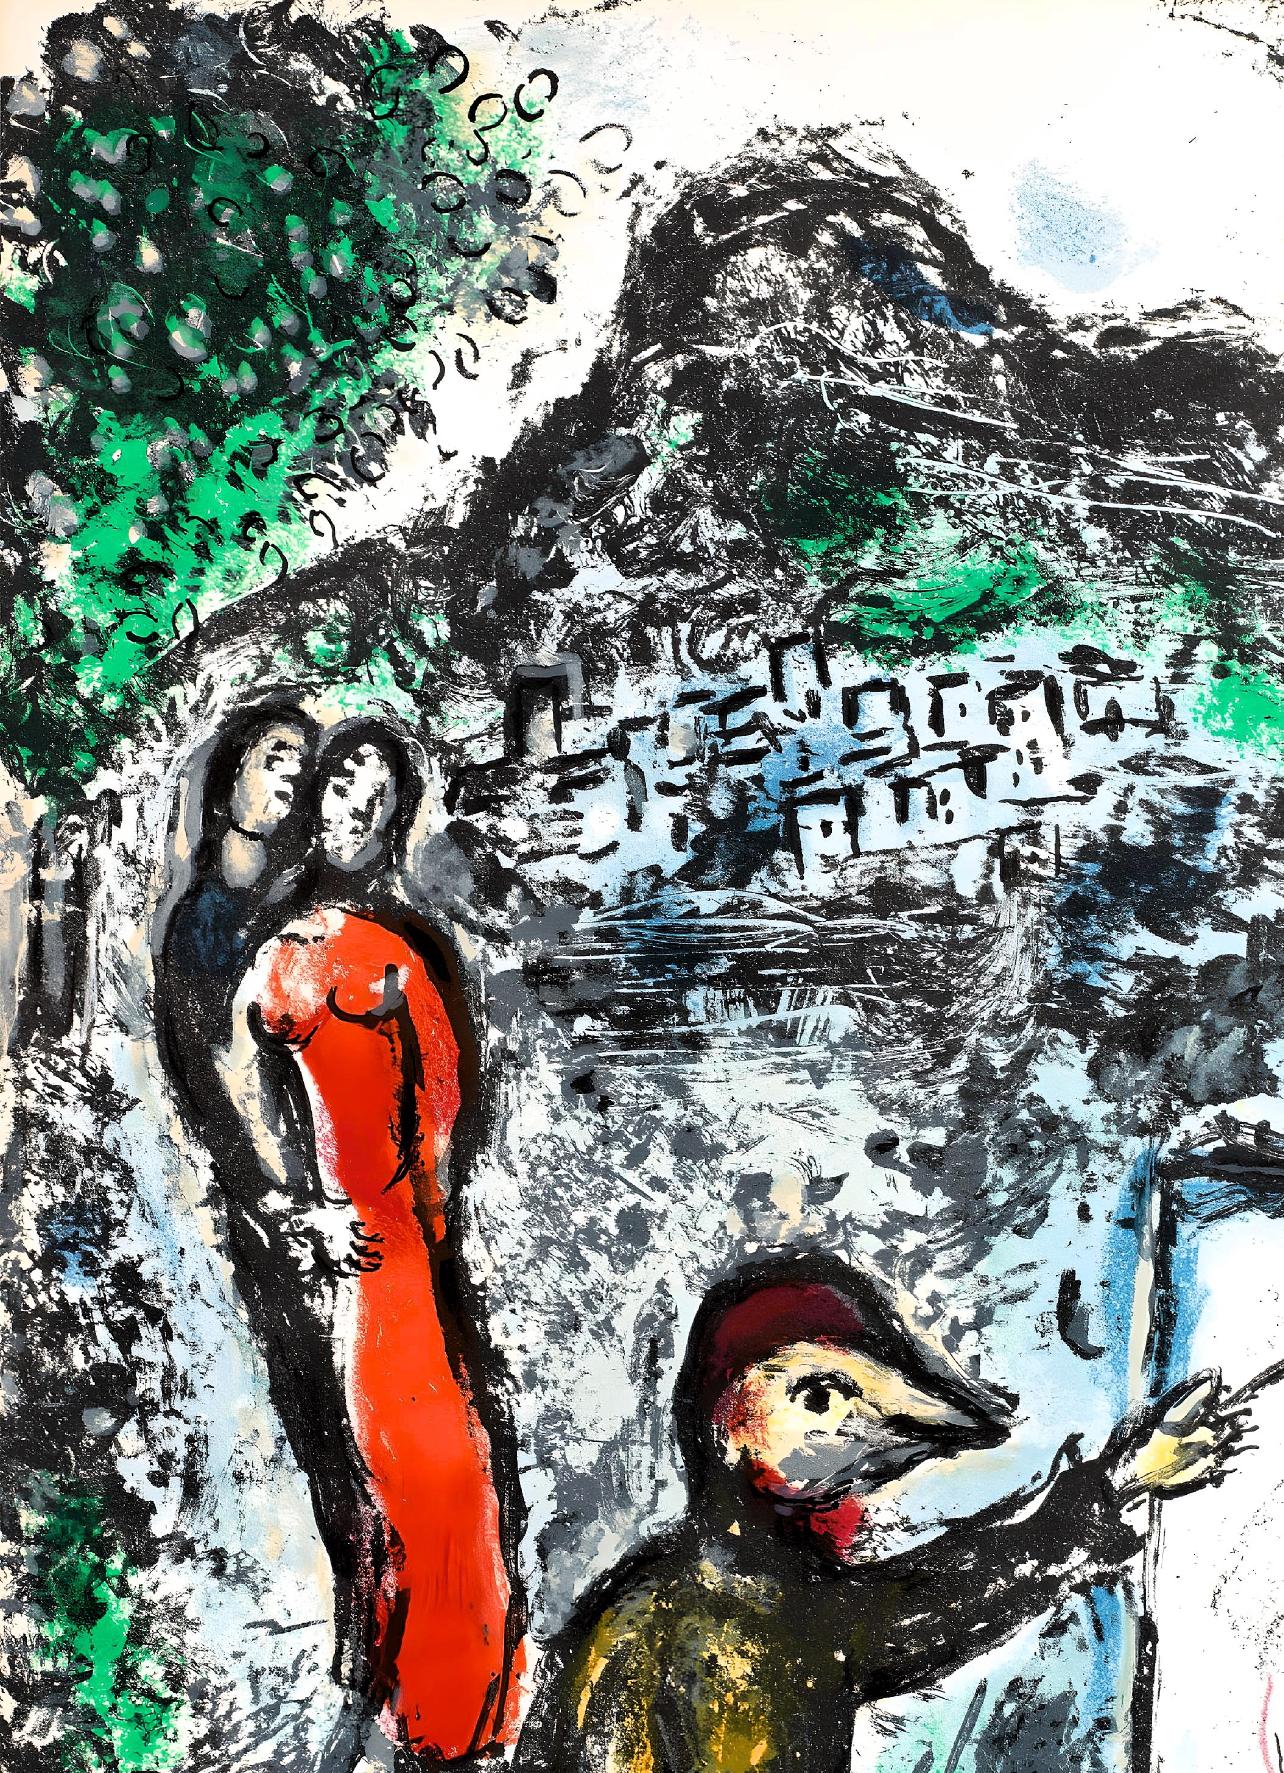 Édition originale Lithographie sur papier vélin. Inscription : non signé et non numéroté, tel que publié. Excellent Condit ; jamais encadré ou maté. Notes : Extrait du volume The Ceramics and Sculptures of Chagall, 1972. Publié par les Editions